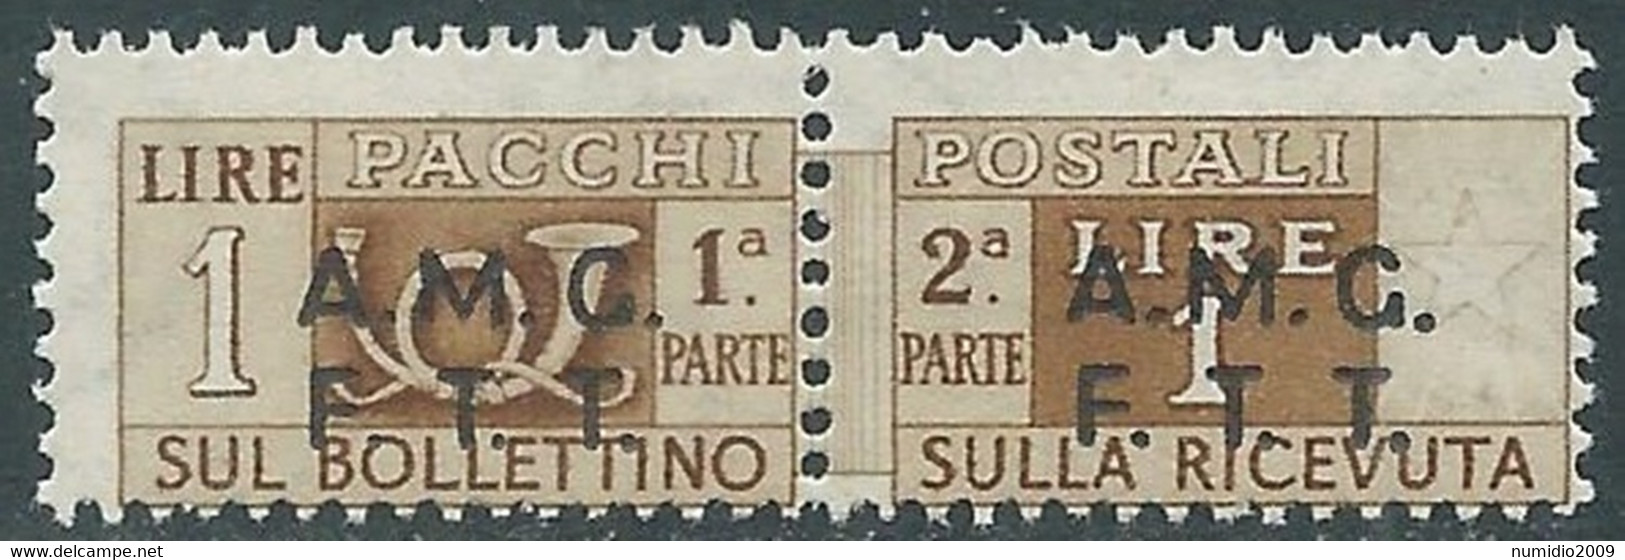 1947-48 TRIESTE A PACCHI POSTALI 1 LIRA MNH ** - RE24-6 - Postpaketen/concessie